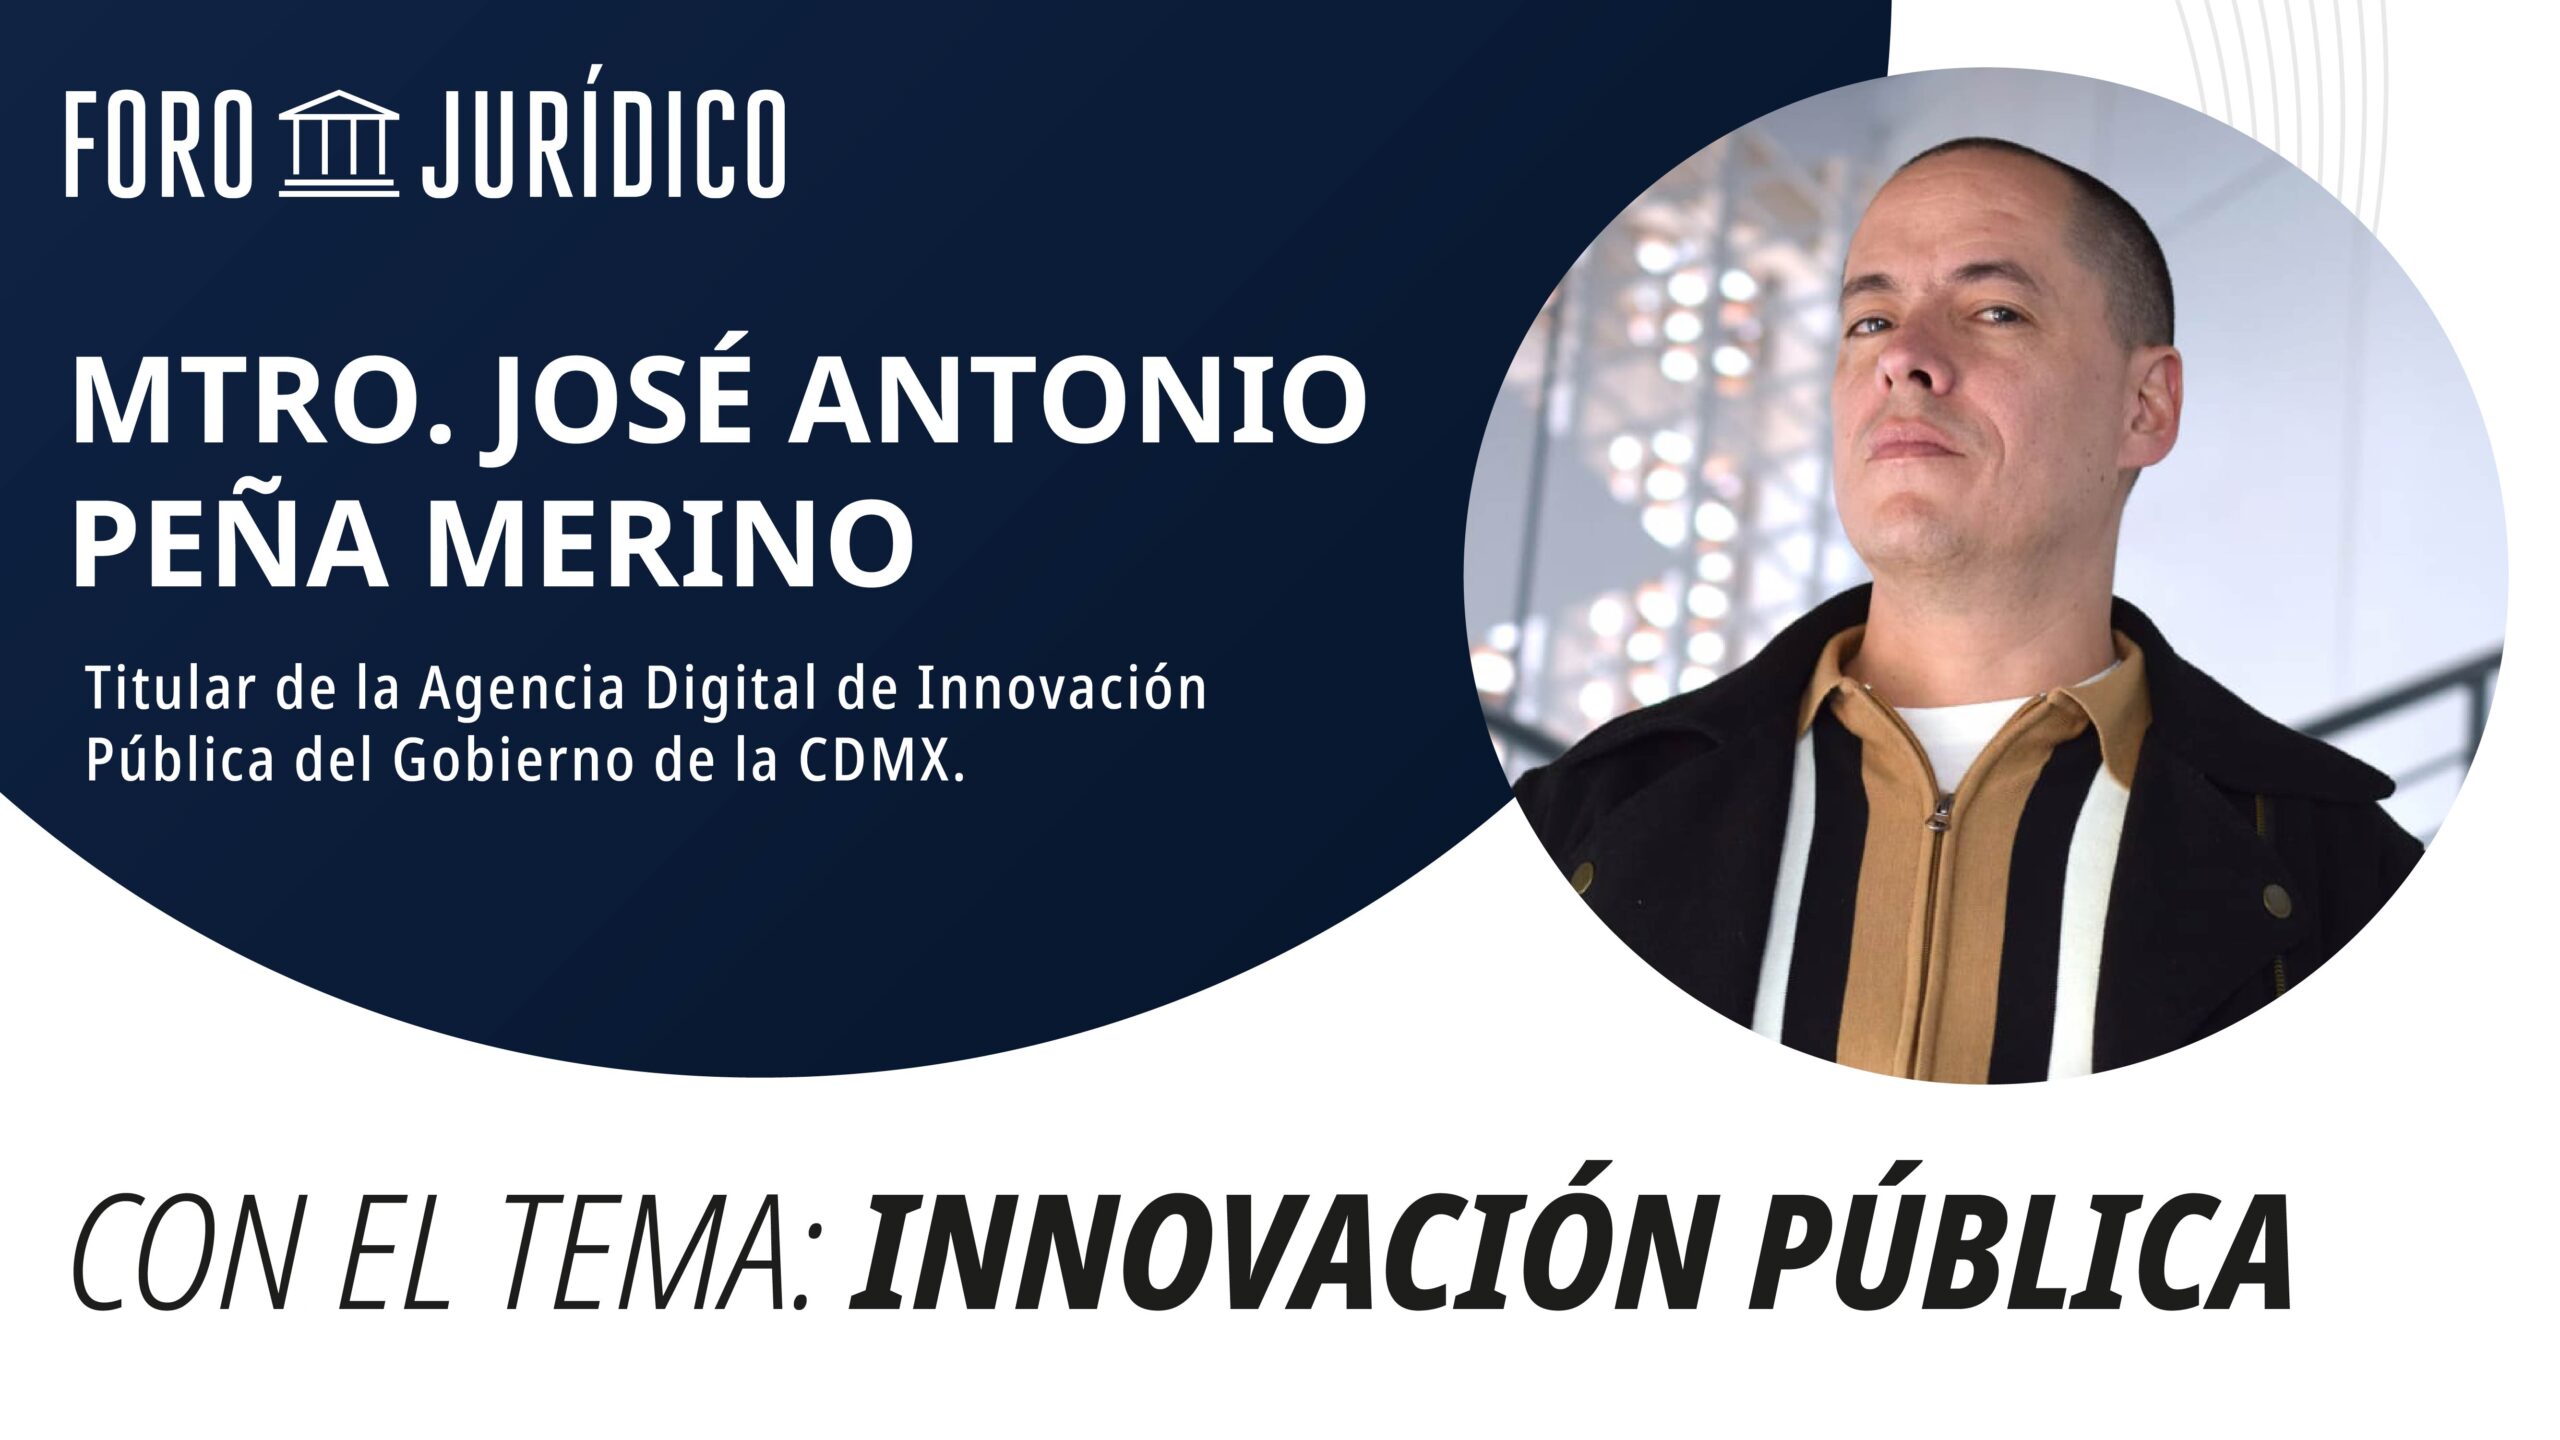 foro jurídico Innovación Pública | José Antonio Peña Merino